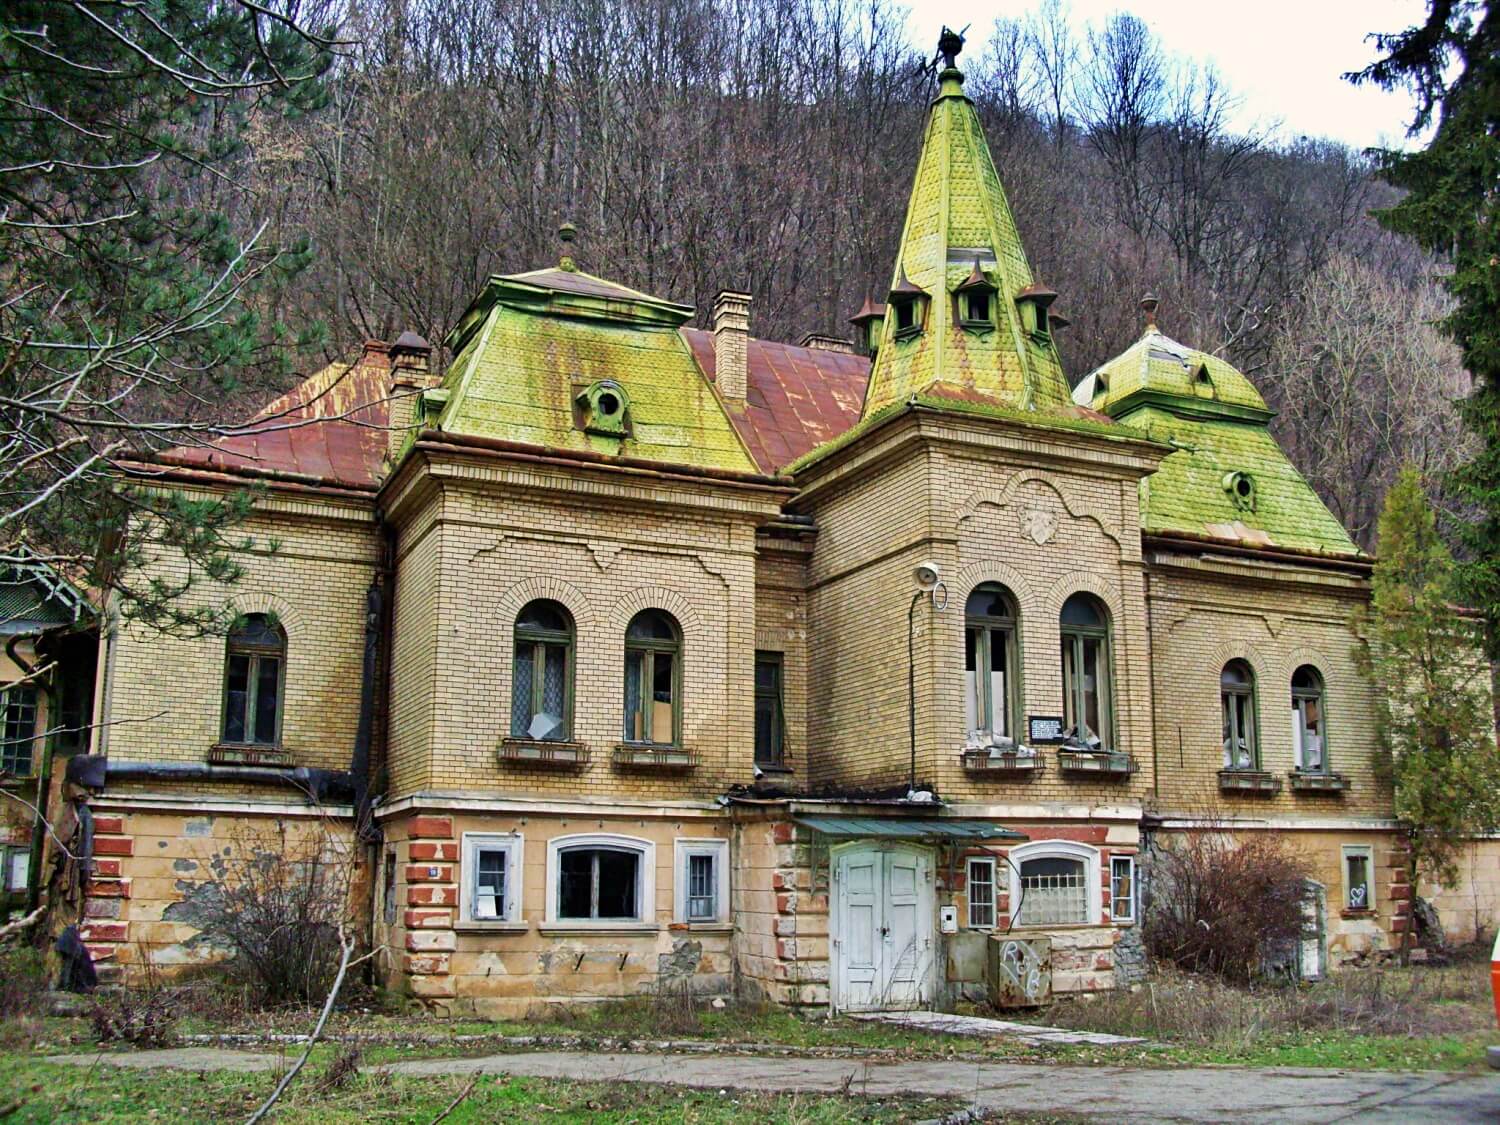 Pokol castle in Valea Borcutului